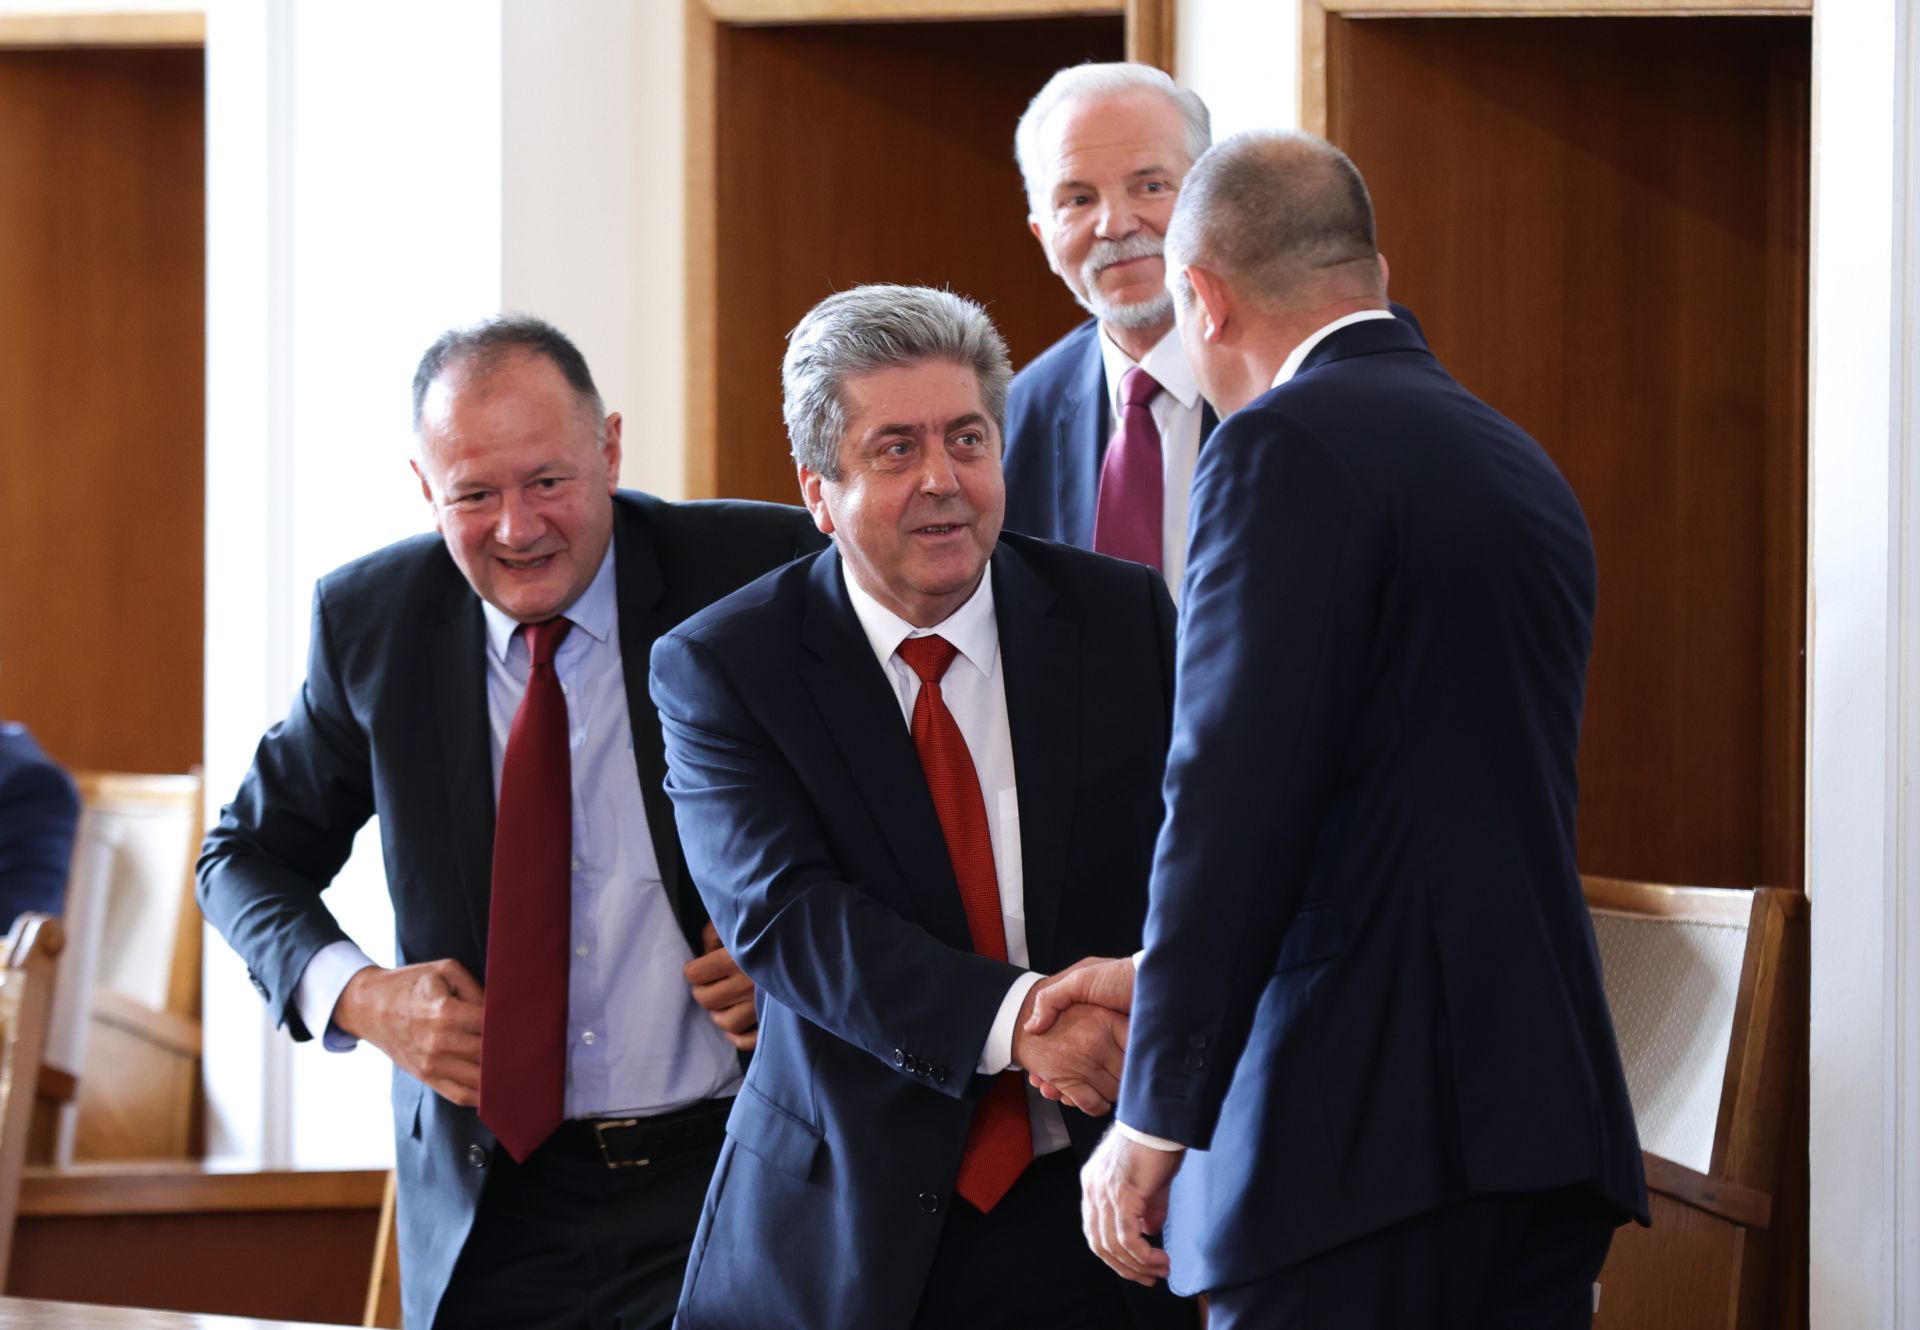 Георги Първанов и Румен Радев - поздрав между двама президенти  